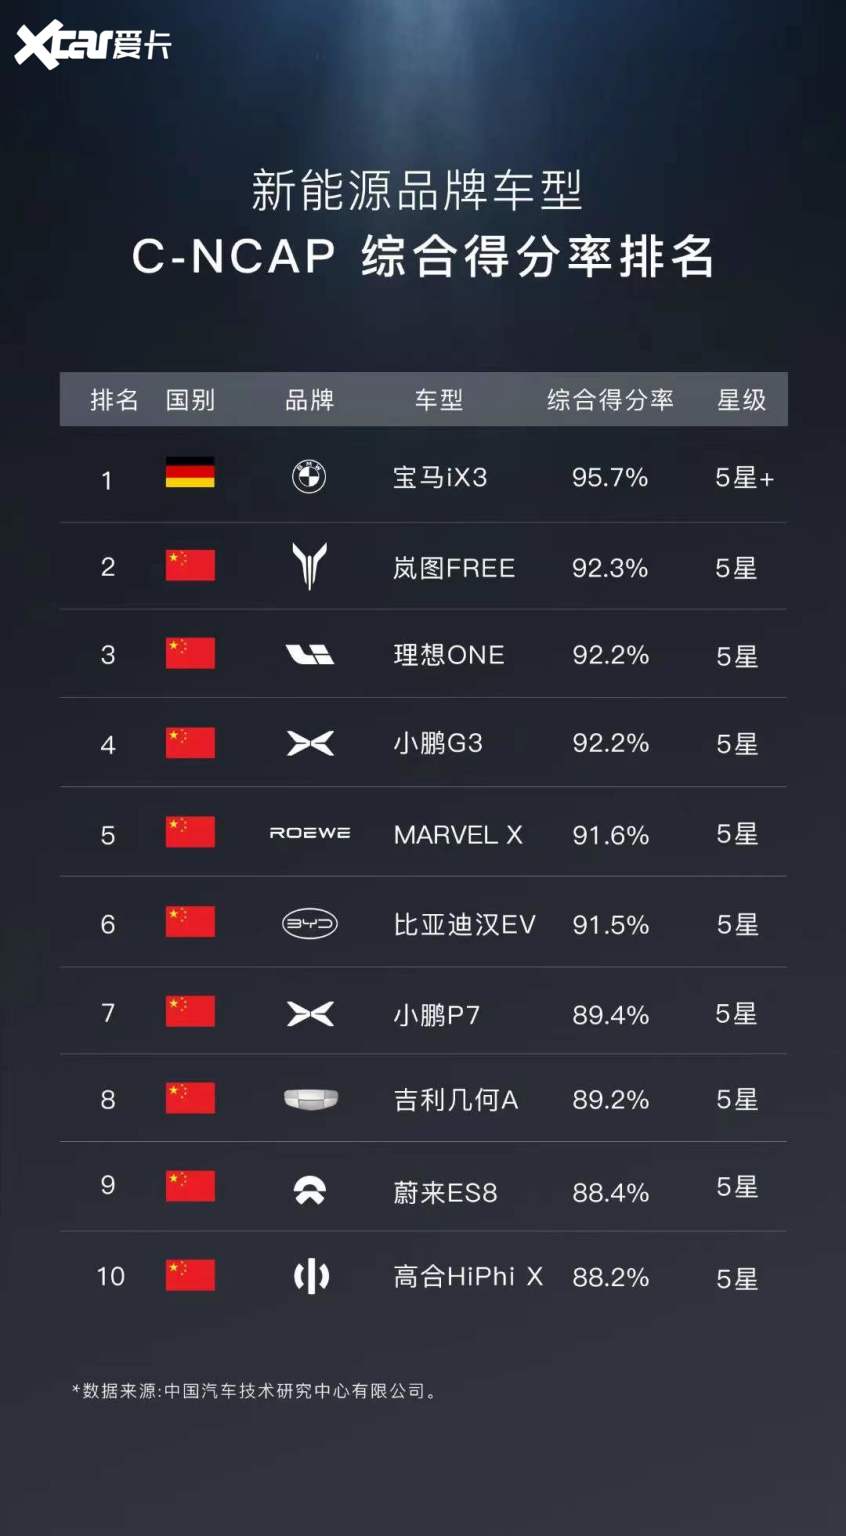 这个榜单有点意思 前10中9个中国品牌车型